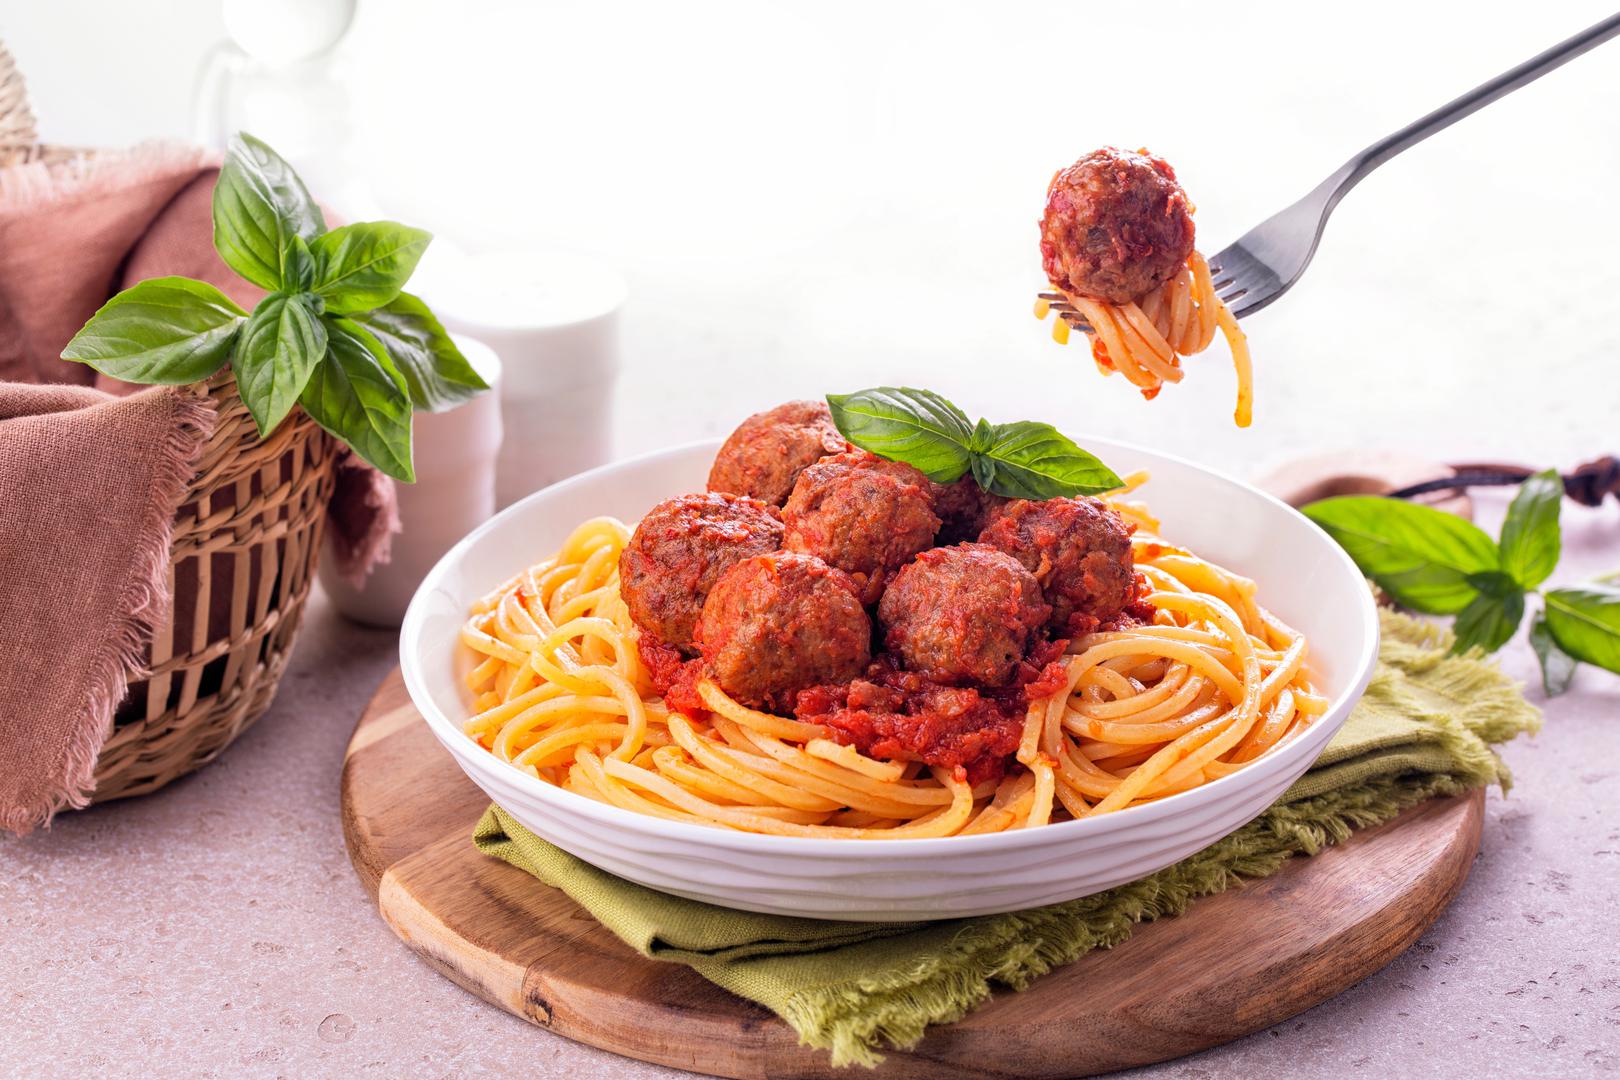 Špageti i mesne okruglice: "Amerikanizirano talijansko jelo kojeg bih se klonio su špageti s mesnim okruglicama. U Italiji se mesne okruglice ili "polpette" obično poslužuju same, možda s kruhom ili prilogom salate, ali nikad sa špagetima. Kombinacija je izrazito američka, zadovoljava želju za obilnim obrocima punim proteina. Iako je popularan i može biti utješan, to je nešto što ne bih skuhao ili naručio jer mu nedostaje autentičnost i ravnoteža okusa koji predstavljaju tradicionalnu talijansku kuhinju", rekao je Fabio Viviani, kuhar i ugostitelj.